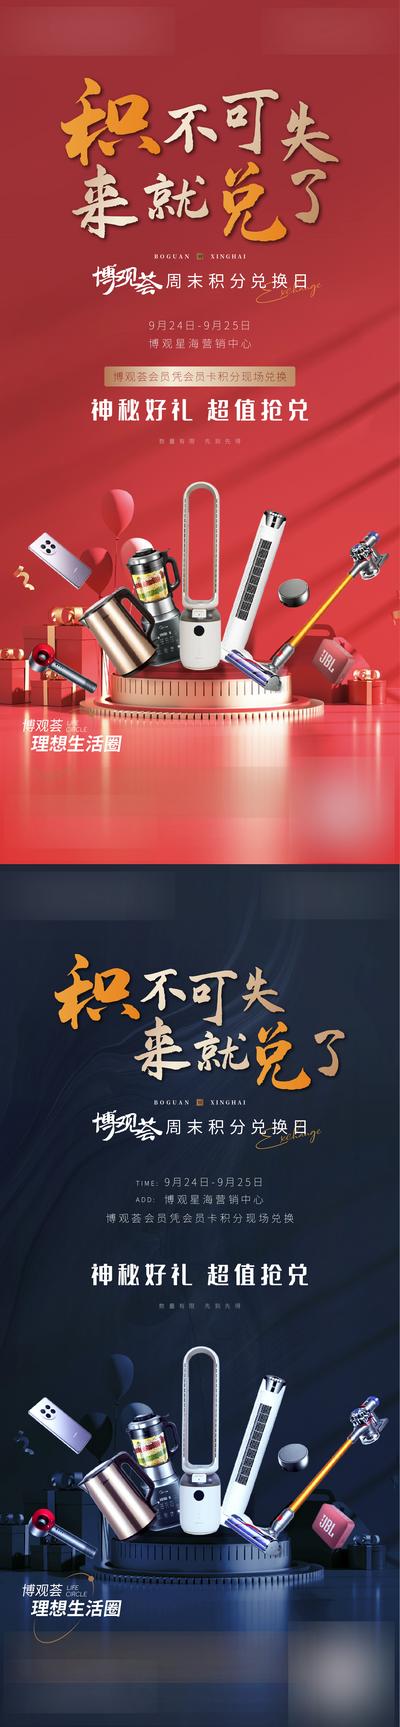 南门网 海报 地产 活动 积分 兑换 礼品 奖品 电器 系列